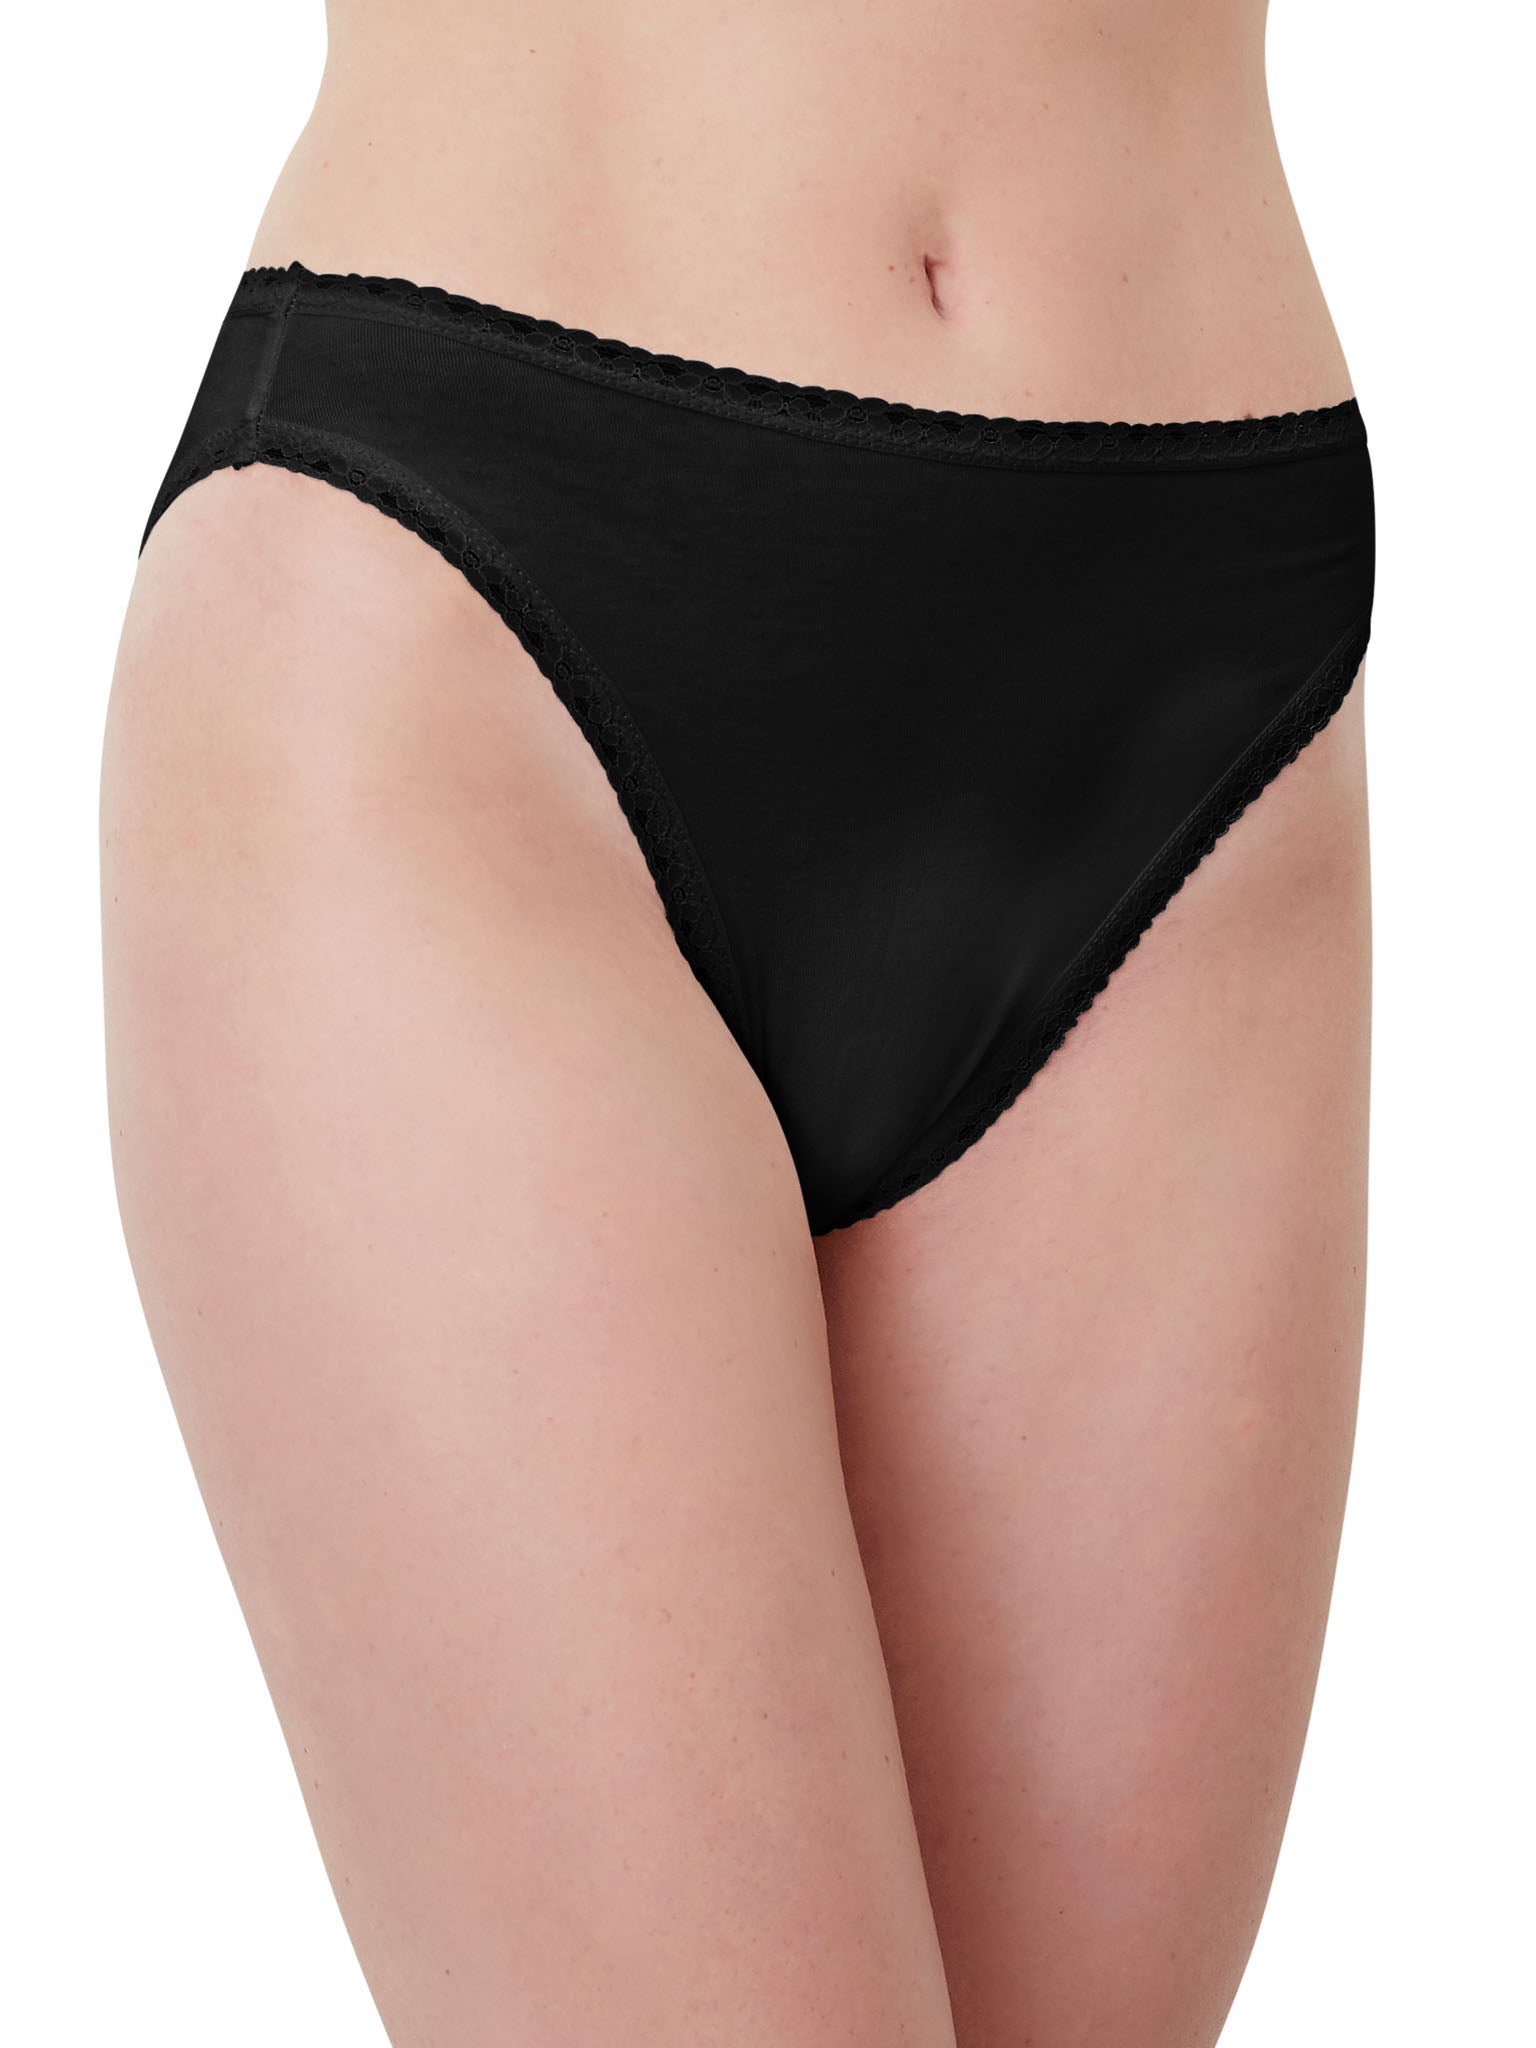 Buy GenericWomen'S Brief Underwear Cotton Panties Waist Lace